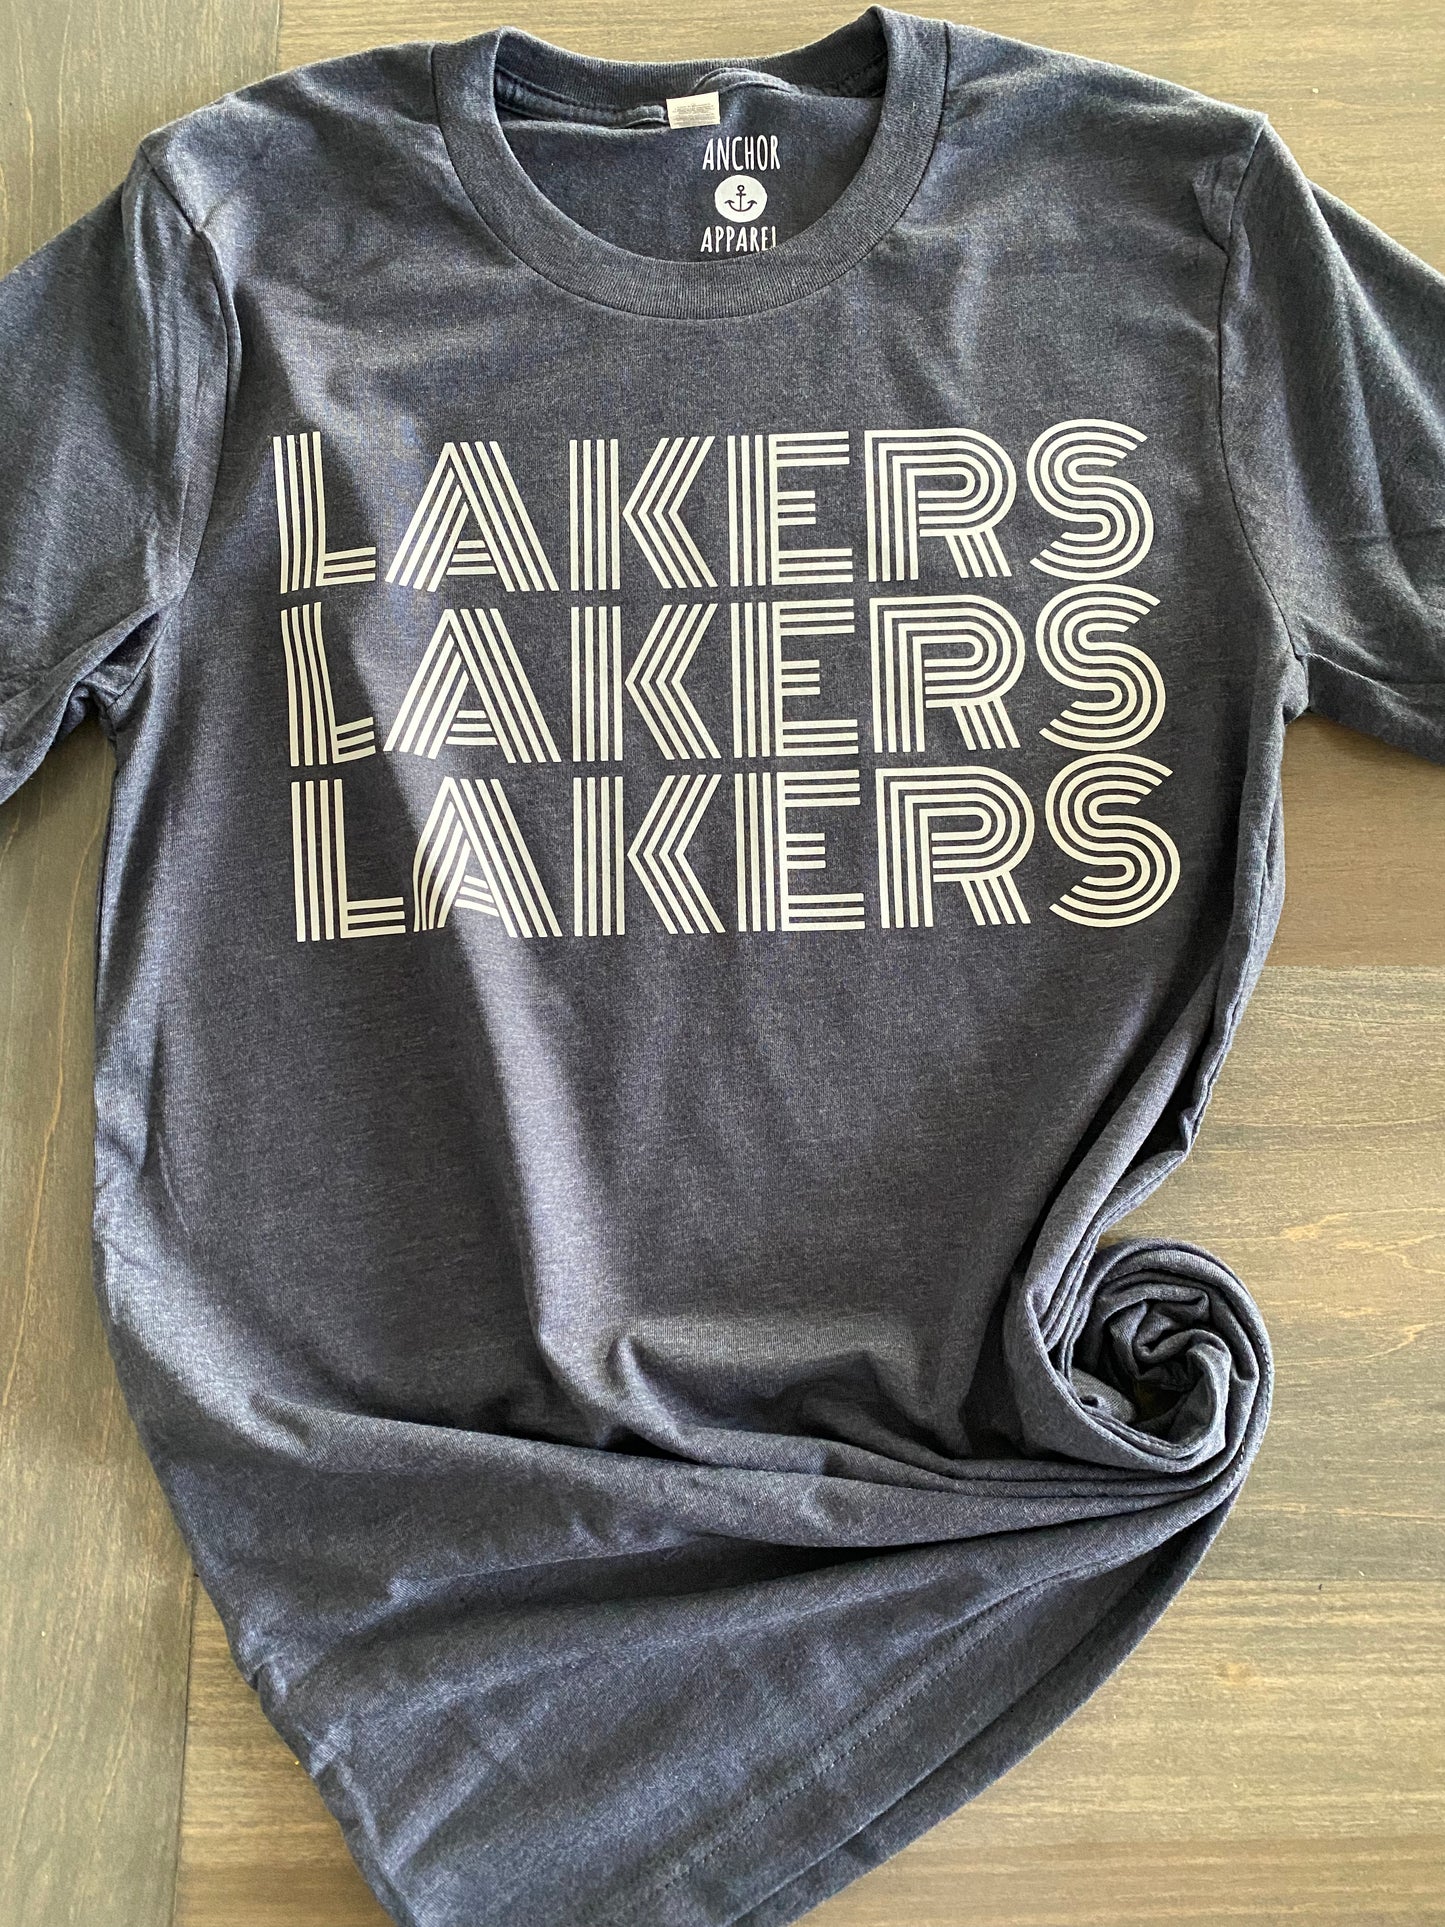 Lakers. Lakers. Lakers.